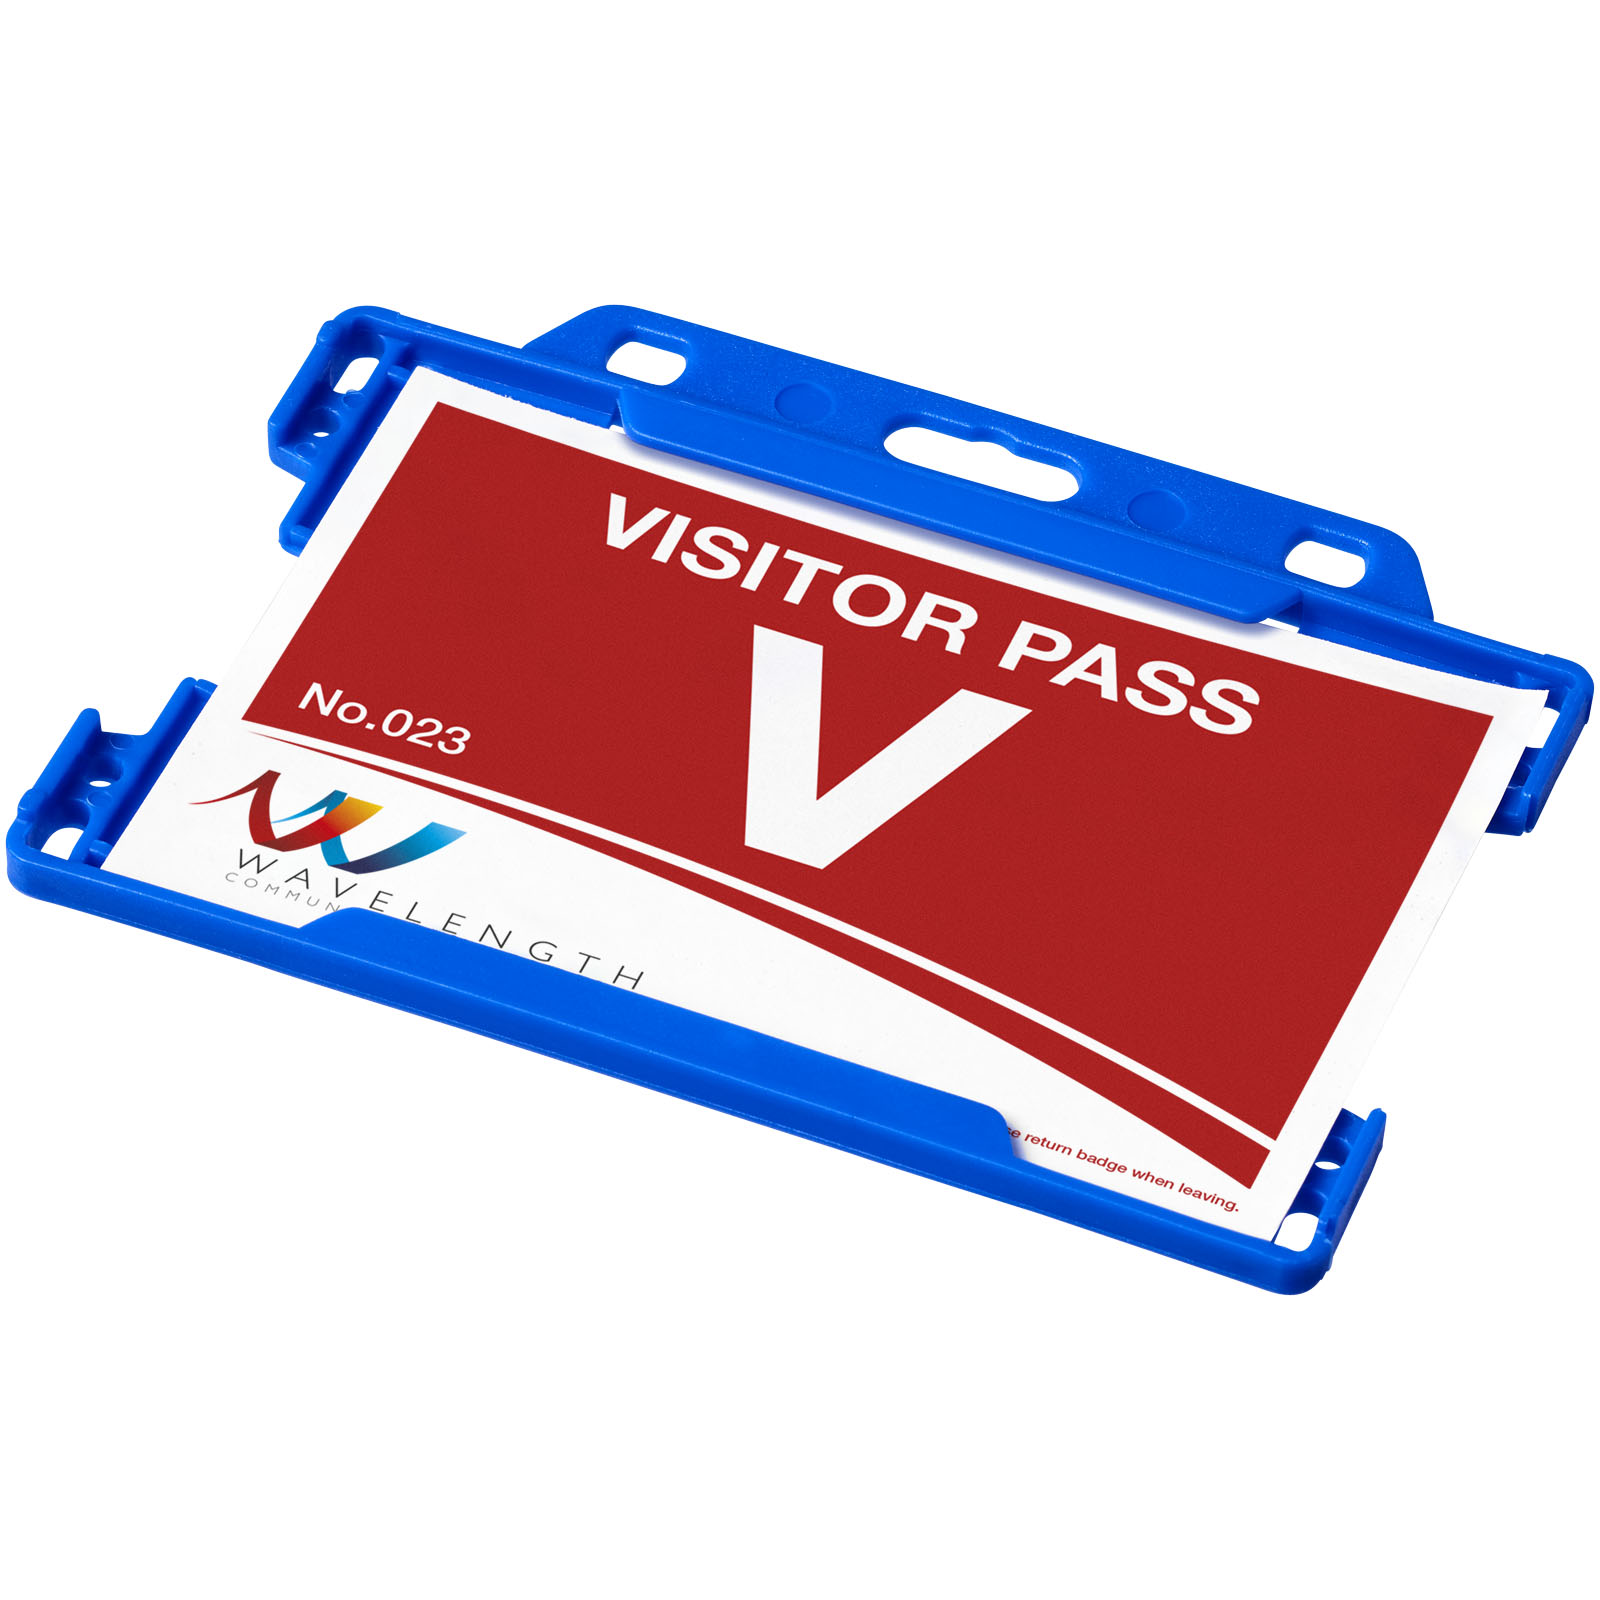 Advertising Business Card Holders - Vega plastic card holder